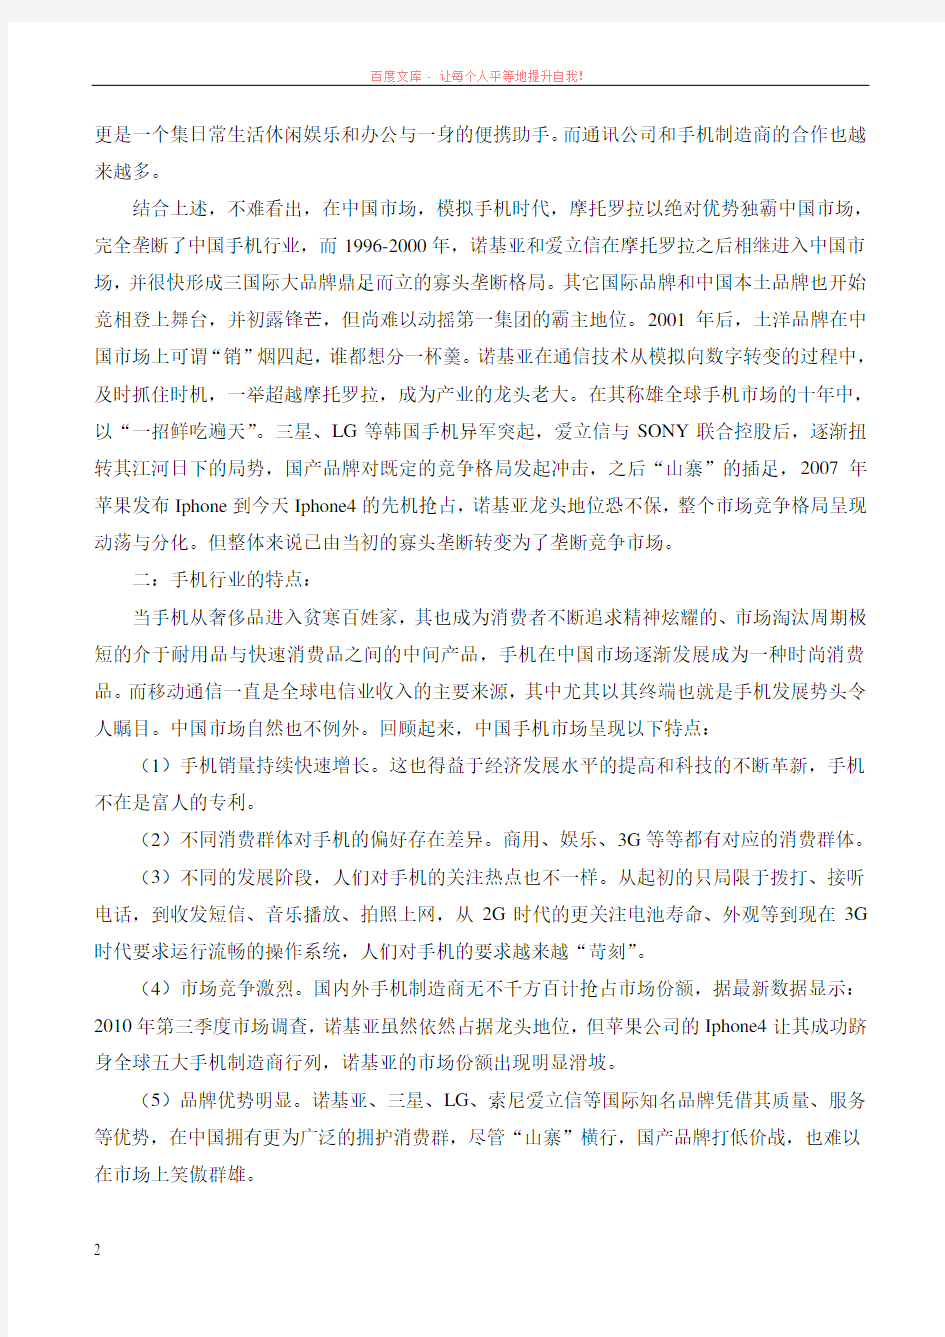 关于对中国手机市场行业的分析报告 (1)